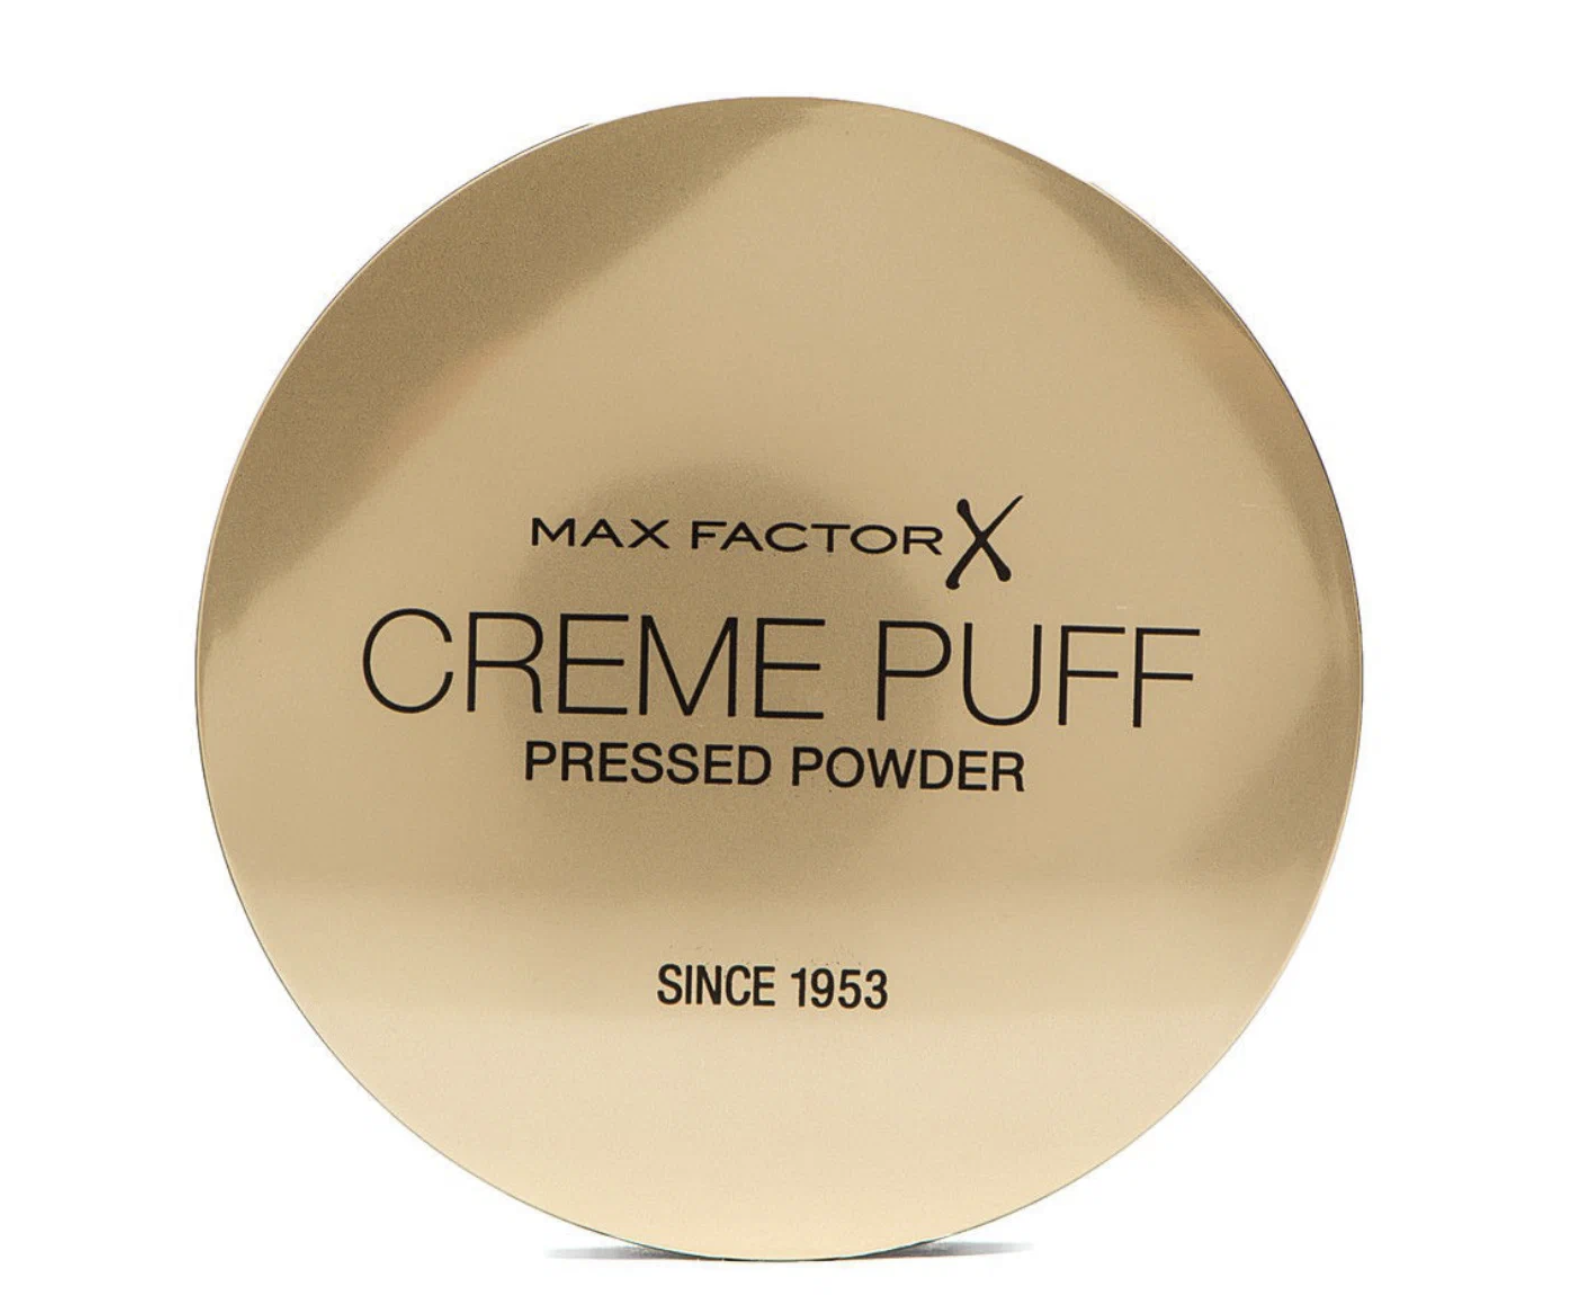 Крем-пудра для лица Max Factor Creme Puff Pressed Powder 40 Creamy Ivory 1 крем пудра для лица top cover creamy powder 2331r27 002n n 2 n 2 1 шт